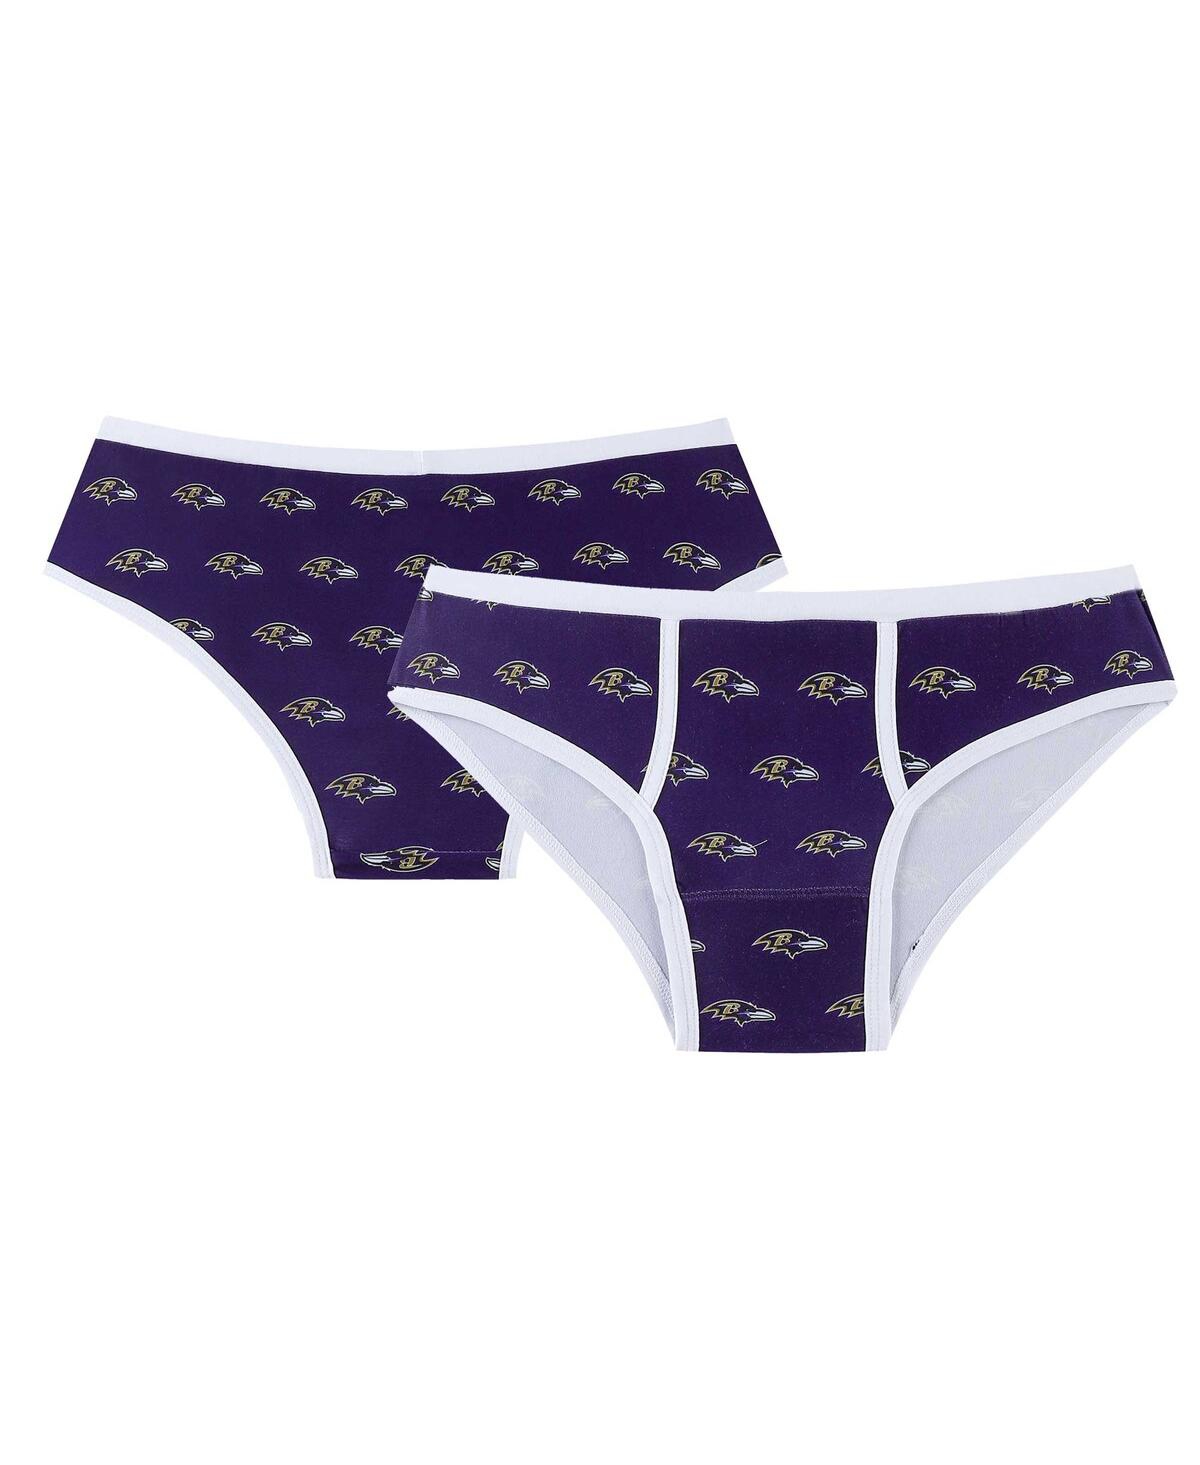 Shop Concepts Sport Women's  Purple Baltimore Ravens Gauge Allover Print Knit Panties